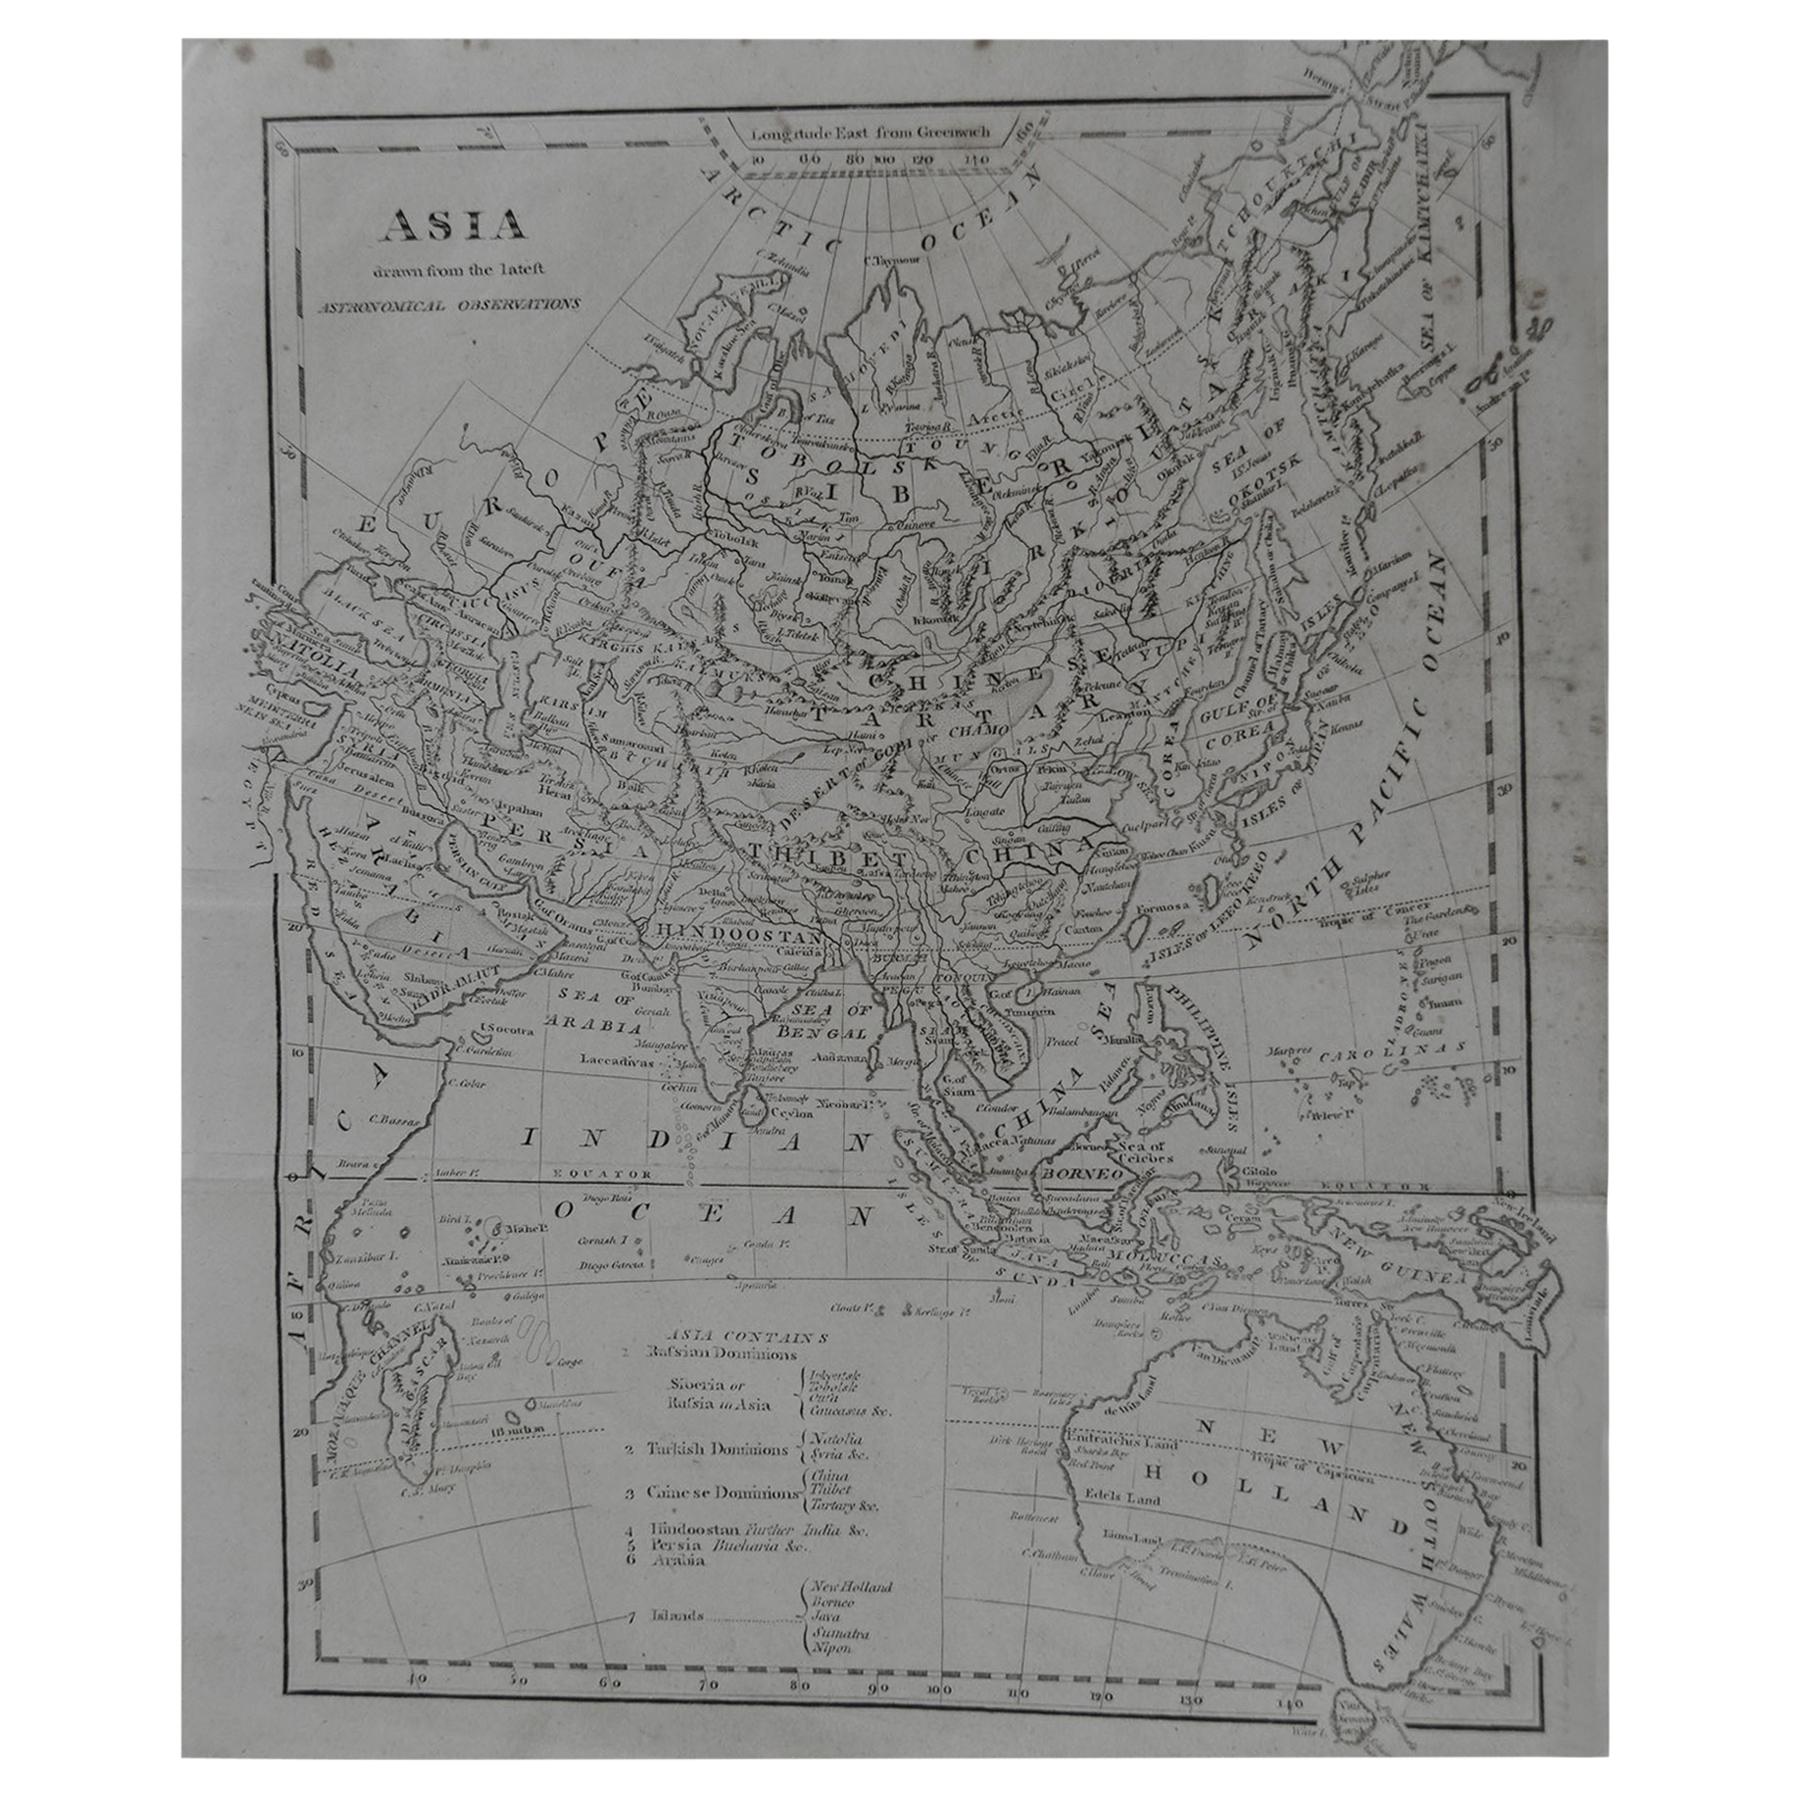 Original Antique Map of Asia, circa 1800